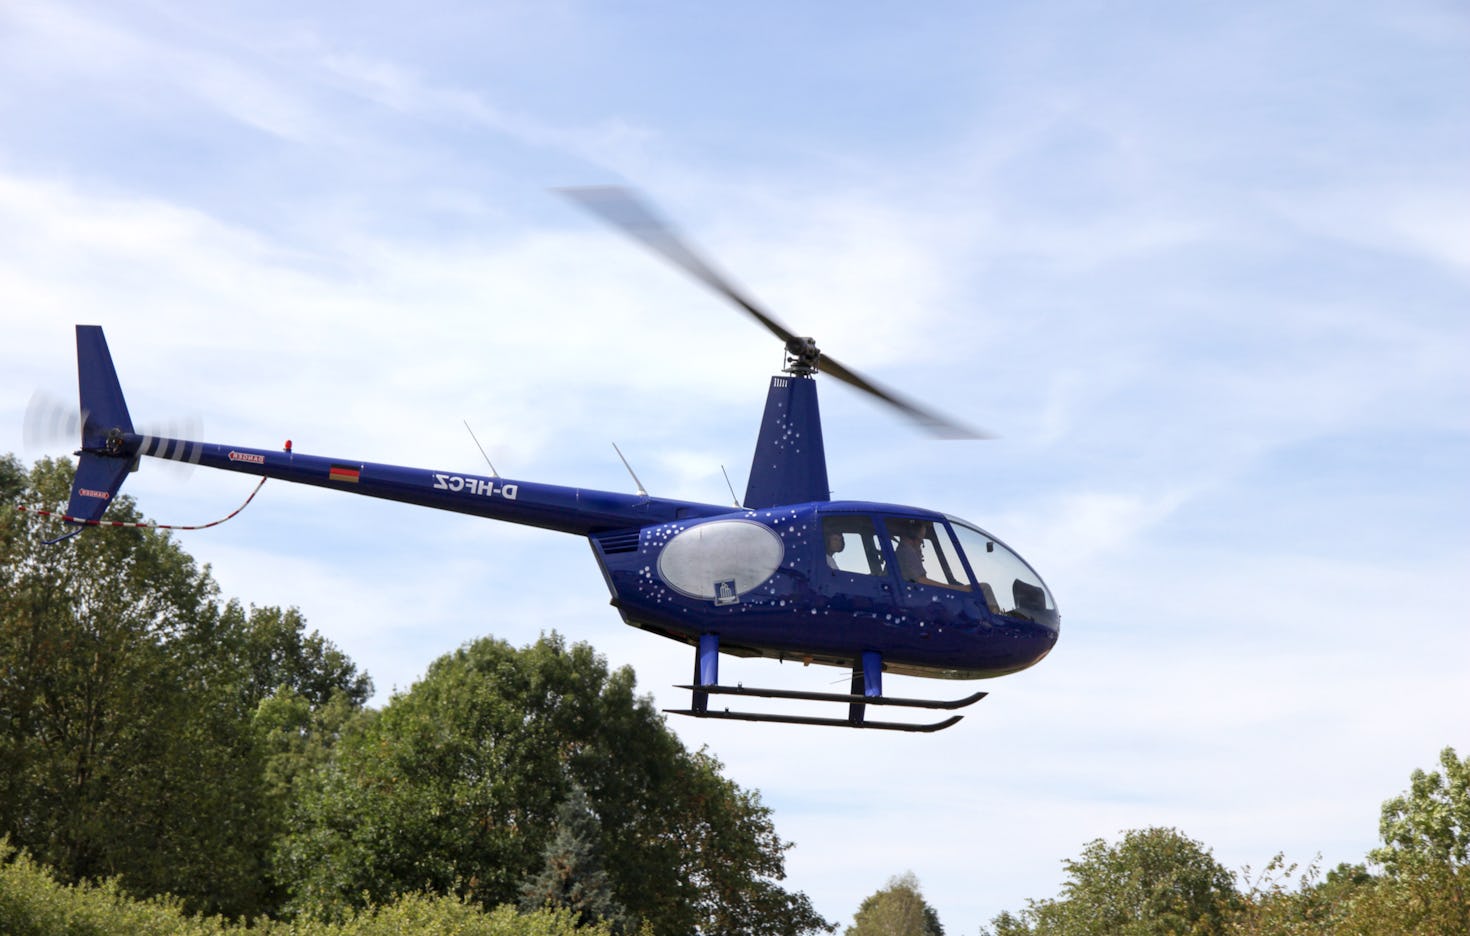 Hubschrauber selber fliegen Giebelstadt (20 Min.)